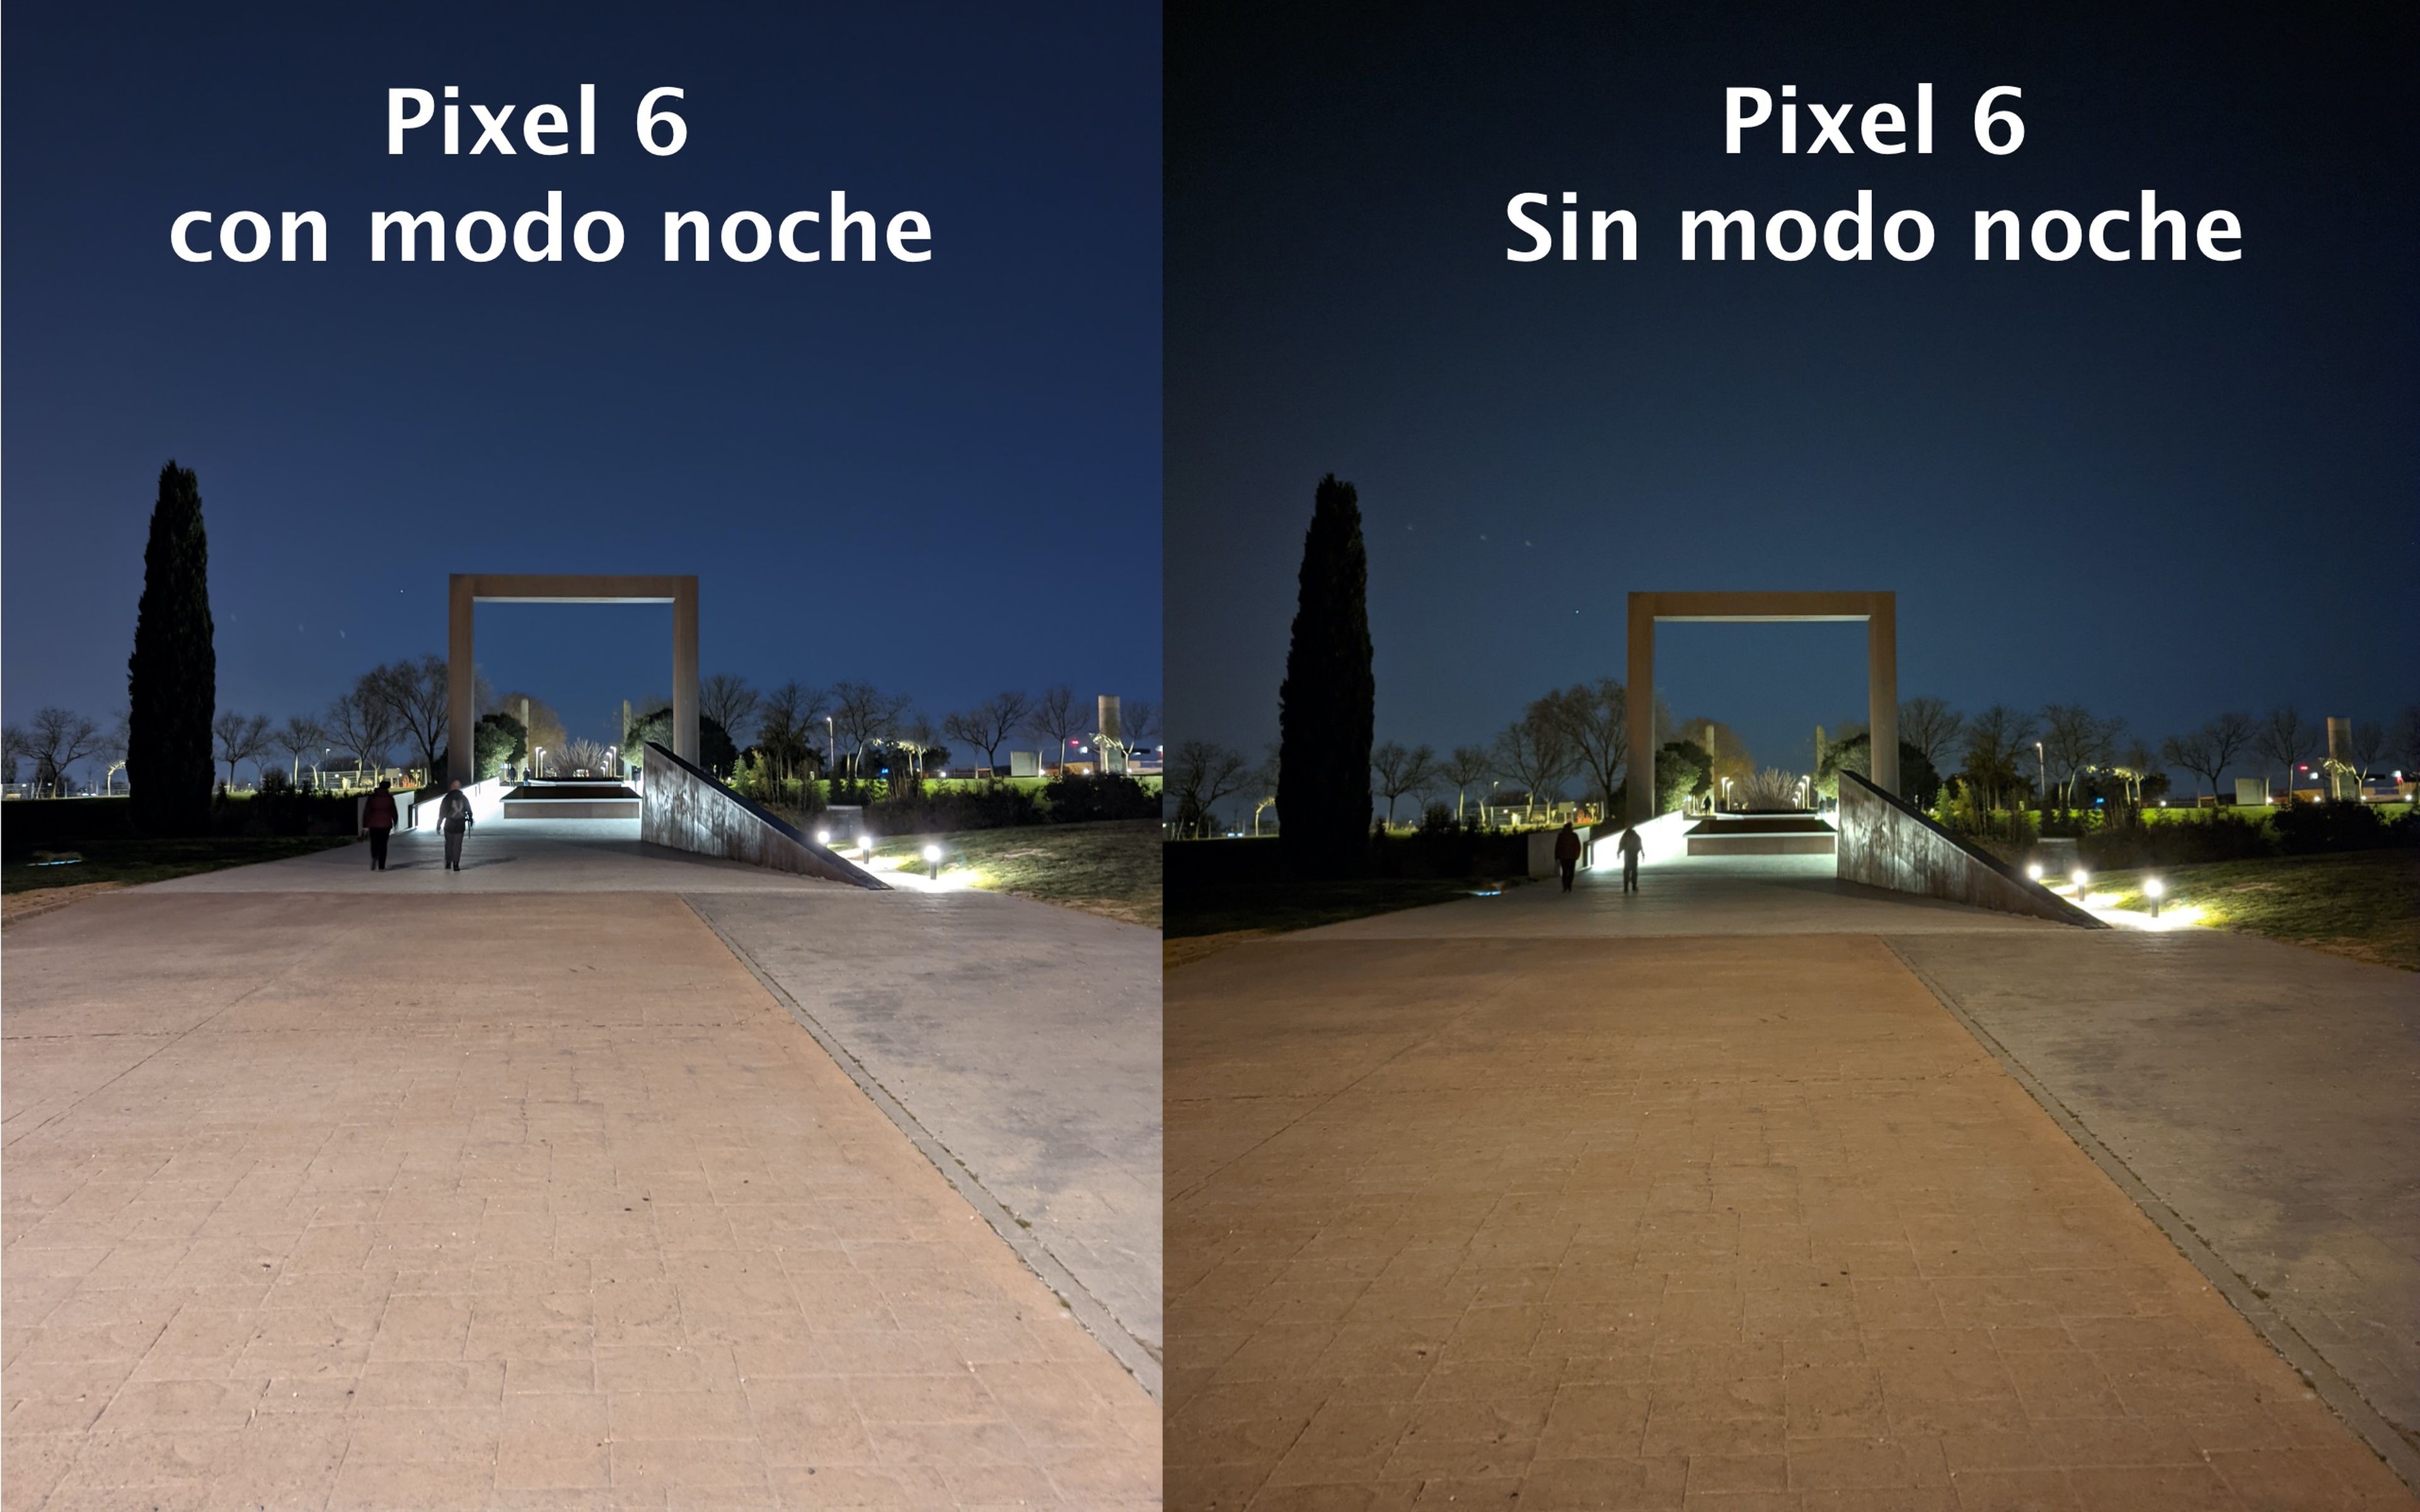 Pixel 6 modo noche